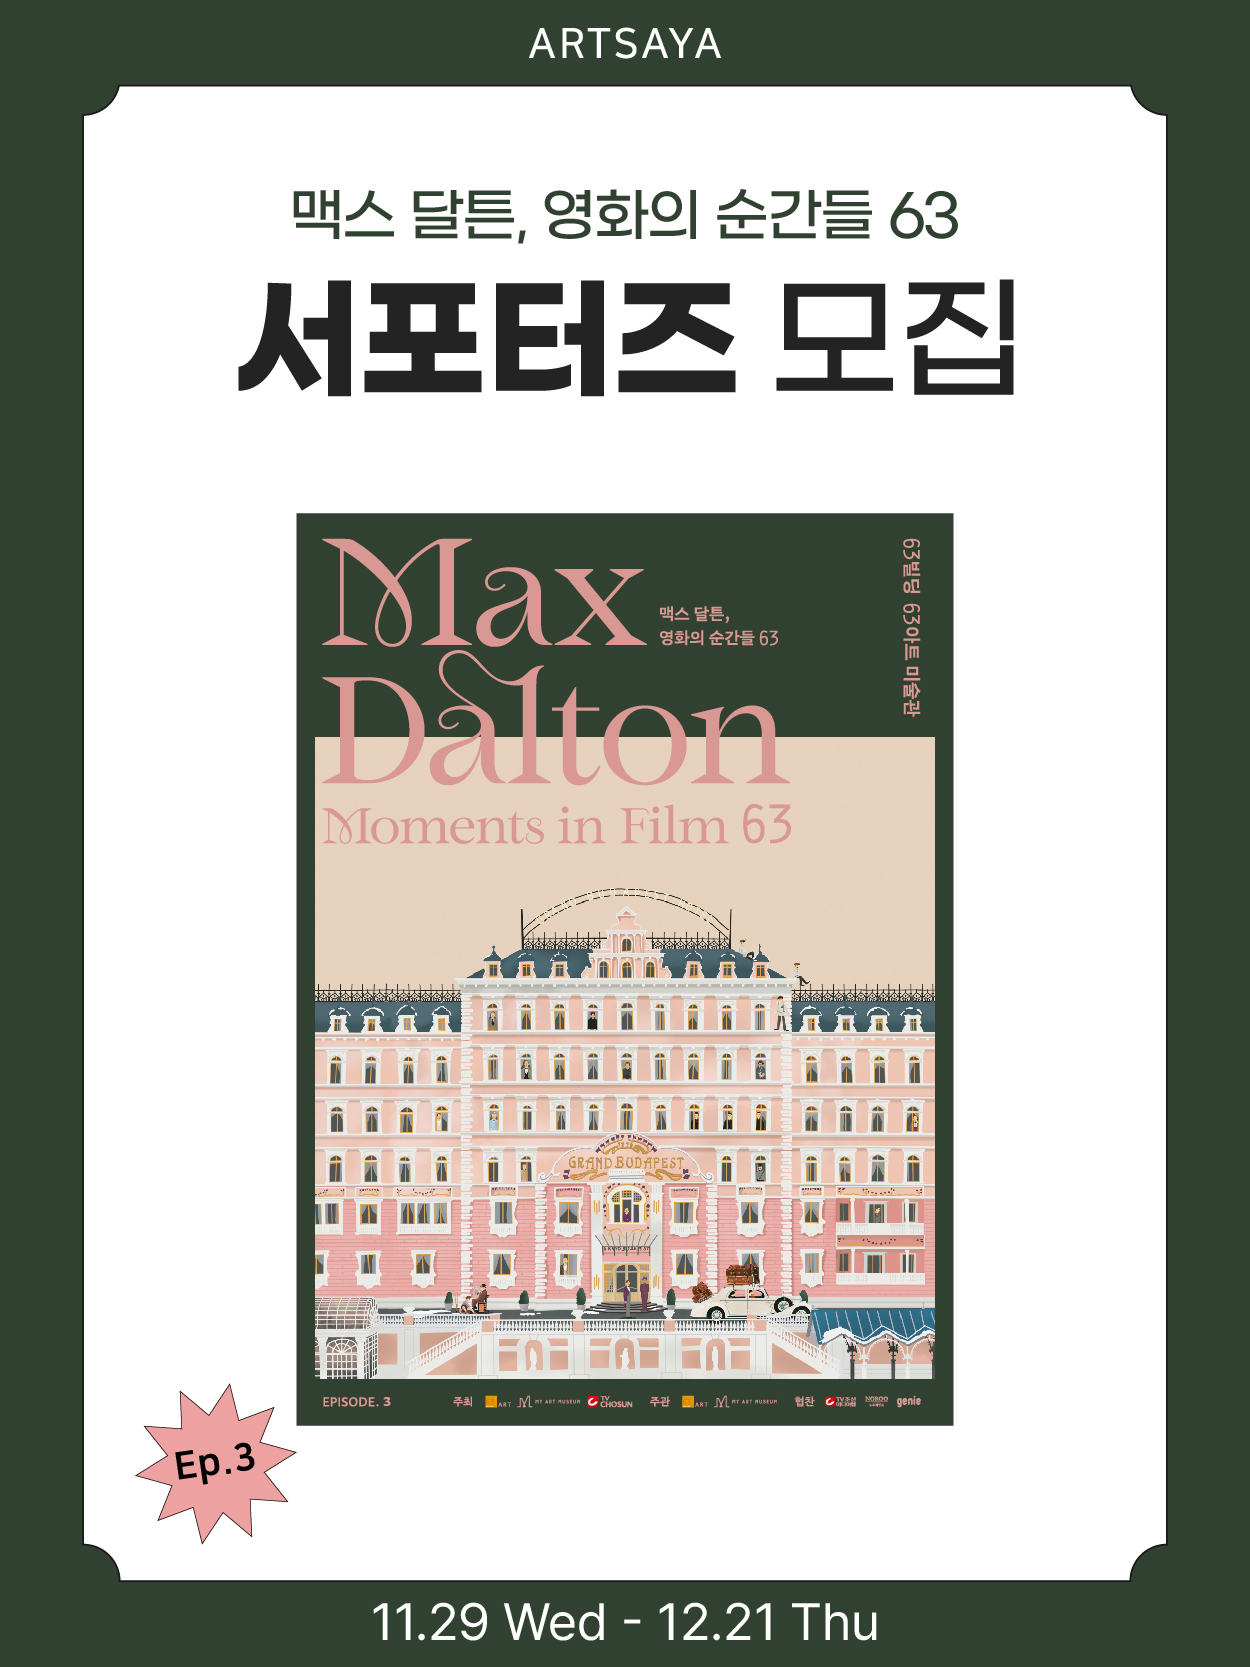 '맥스 달튼, 영화의 순간들 63' ep.3 서포터즈 모집